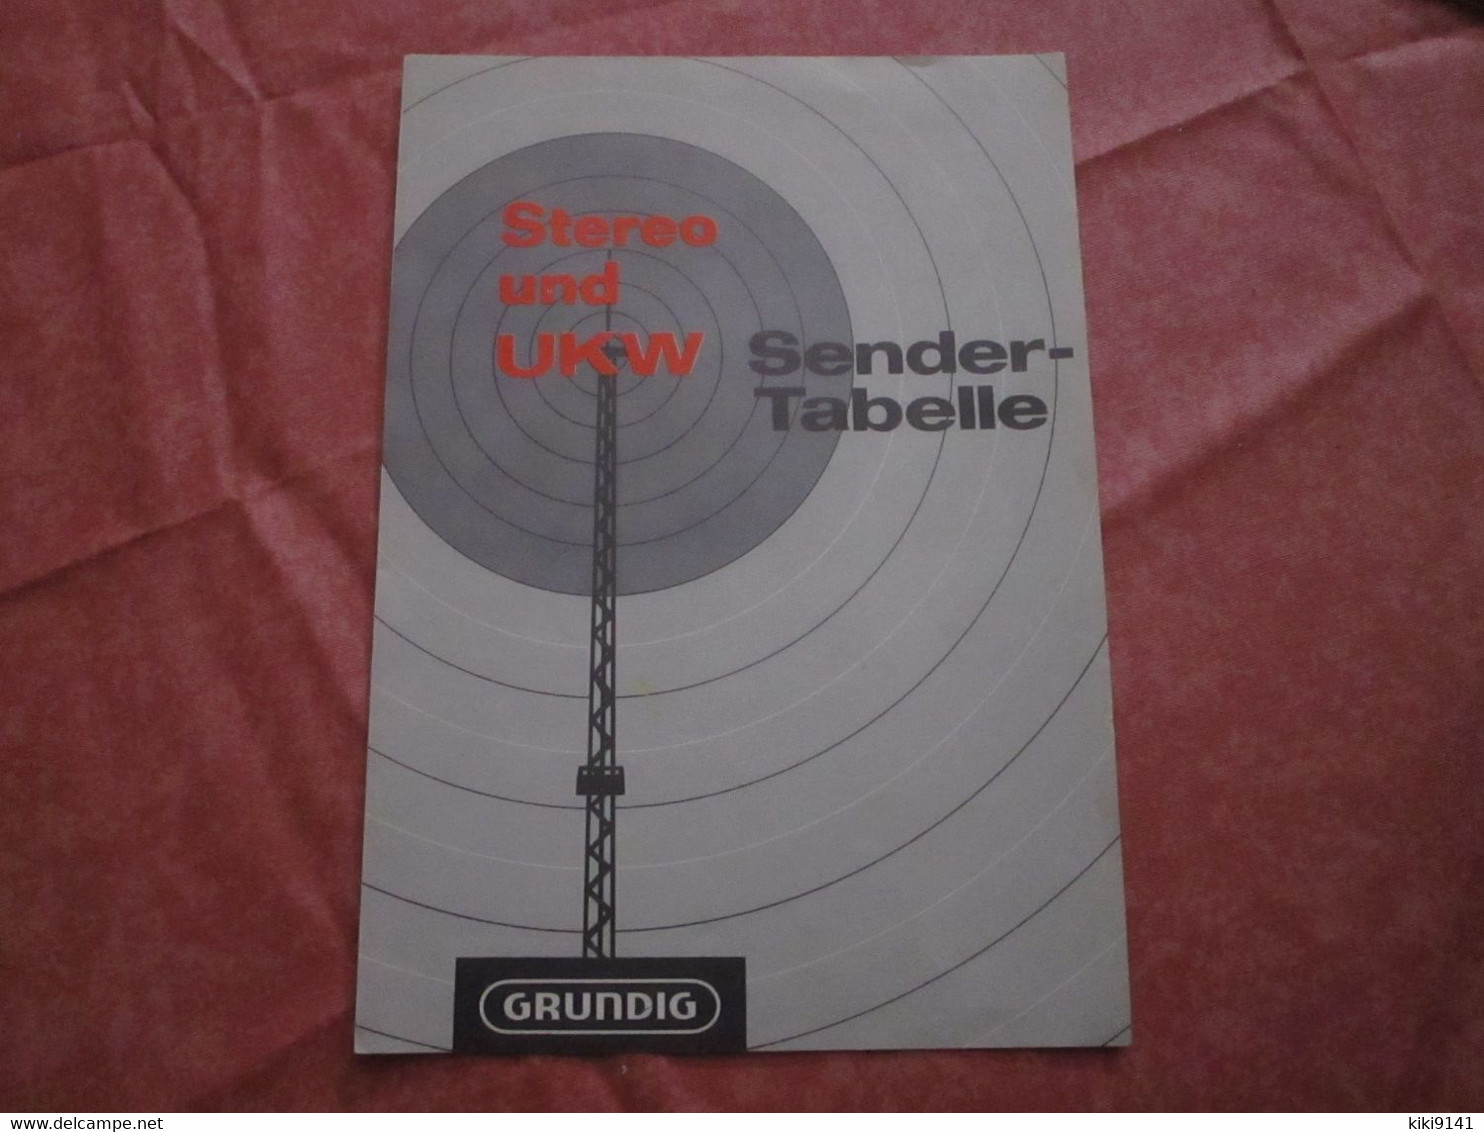 GRUNDING - Stereo Und UKW - Stender-Tabelle - Literatuur & Schema's